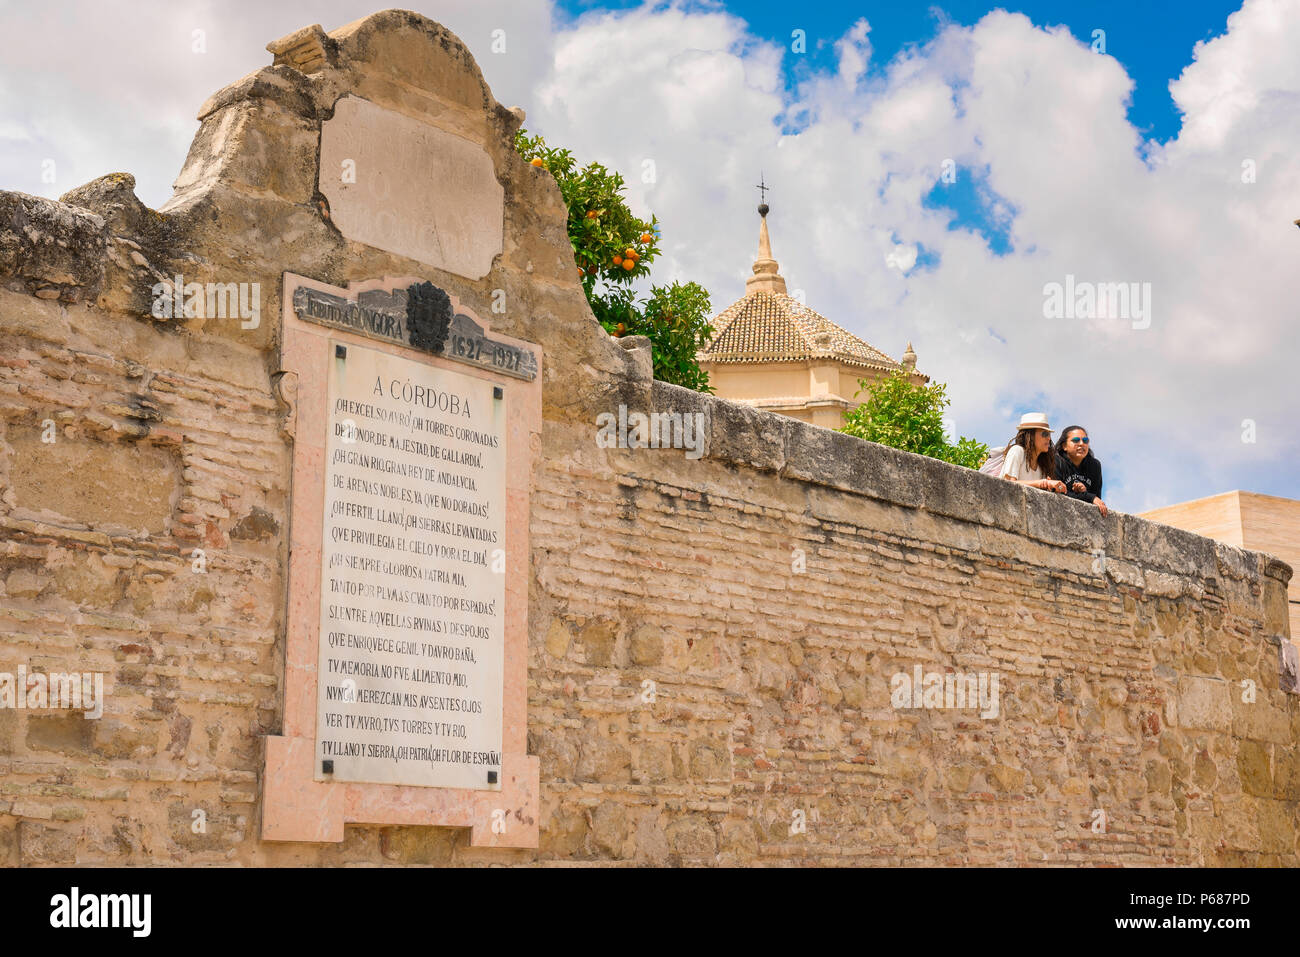 Andalusien Spanien Reise, Blick auf zwei junge Frauen Reisende über die alte Stadtmauer in Cordoba (Cordova), Andalusien, Spanien Stockfoto